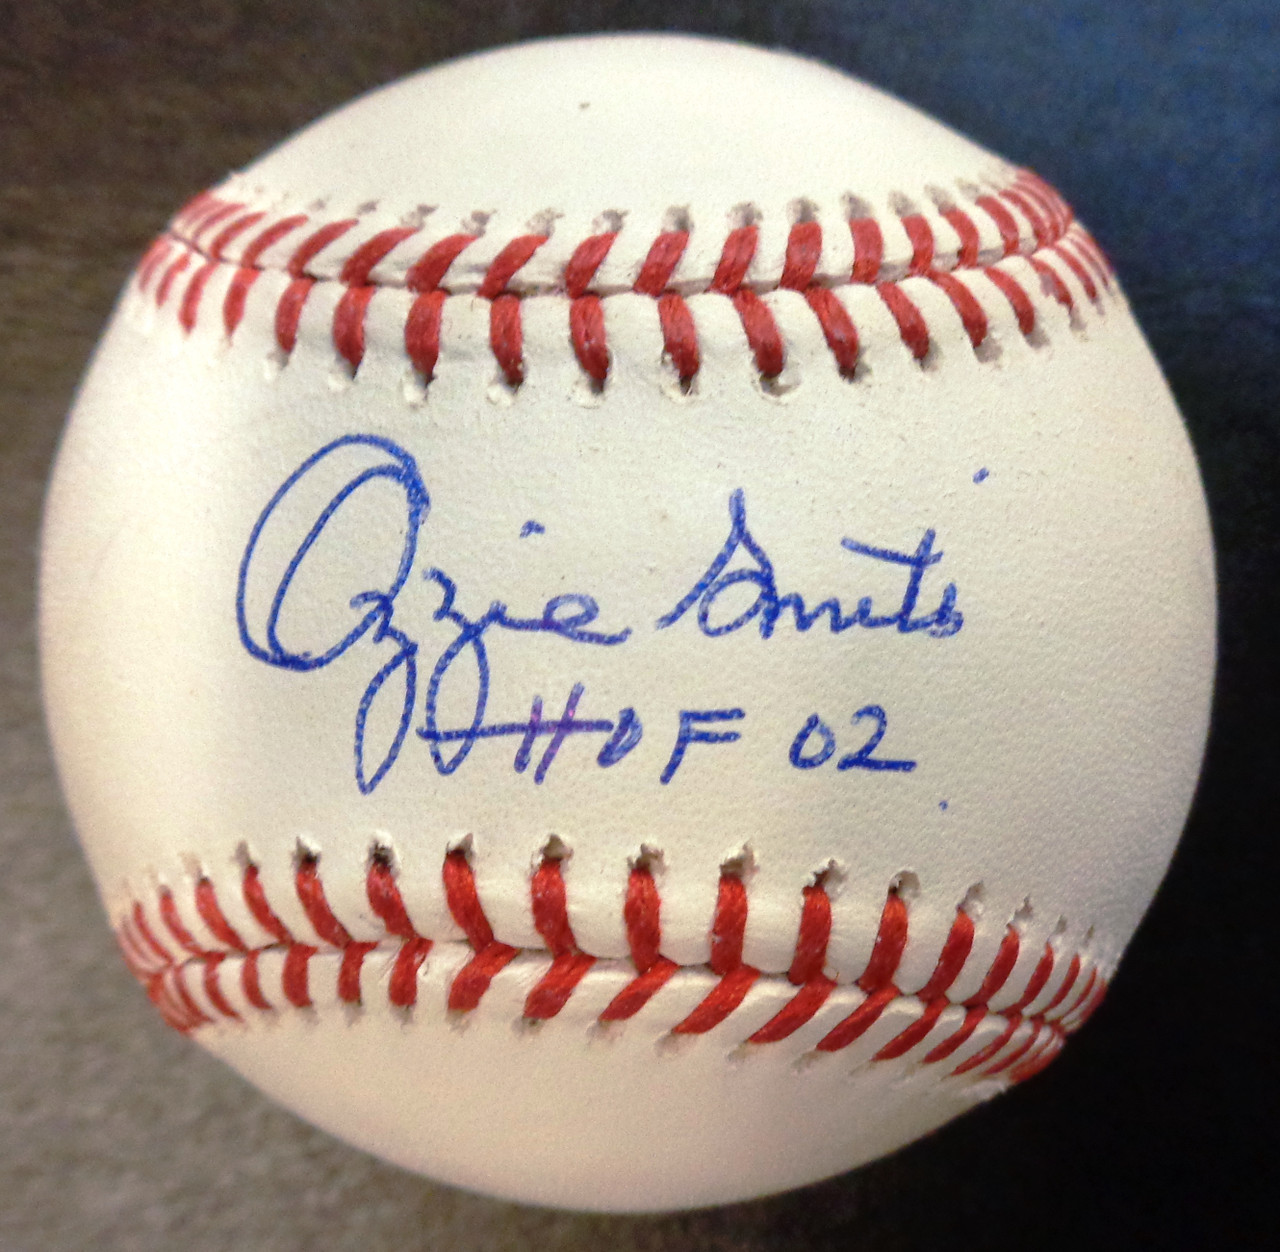 Ozzie Smith Autographed Official Major League Baseball w/ HOF 02 -  Detroit City Sports